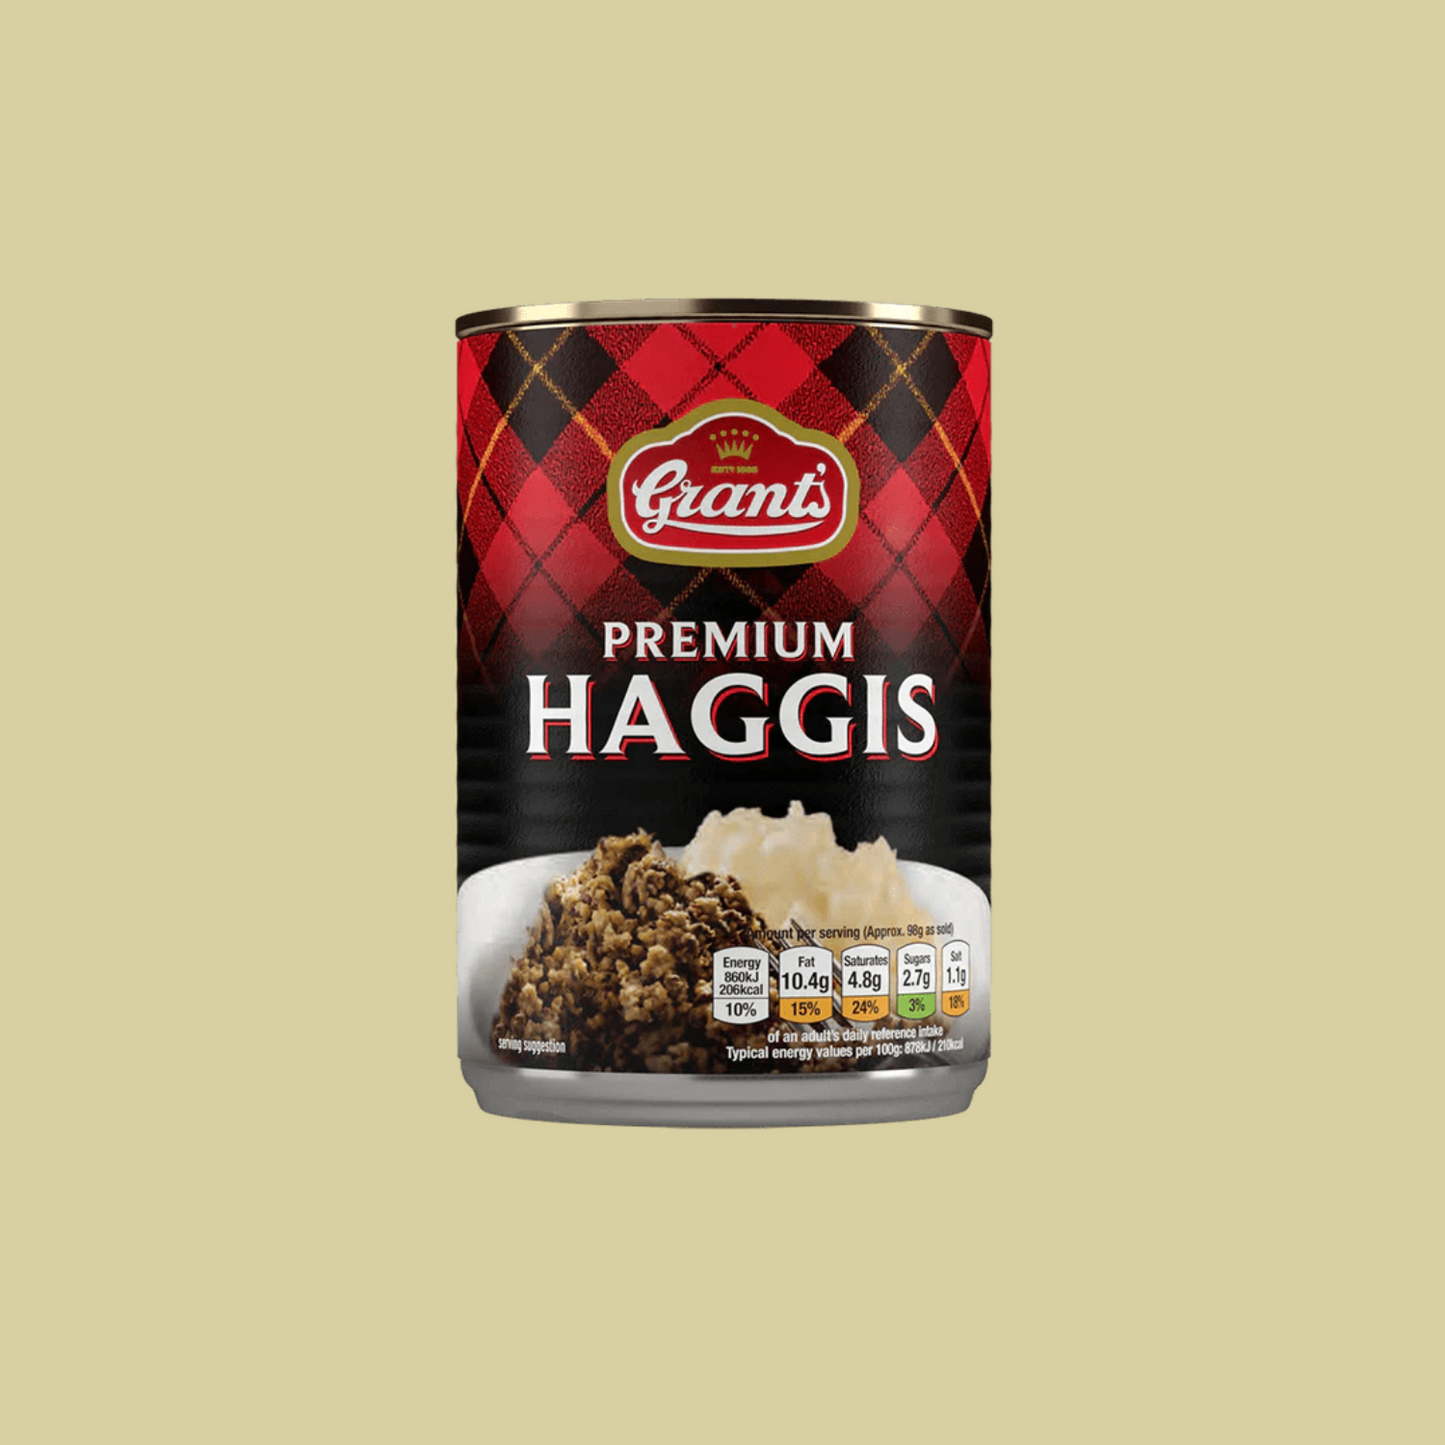 Grant's Premium Haggis 392g